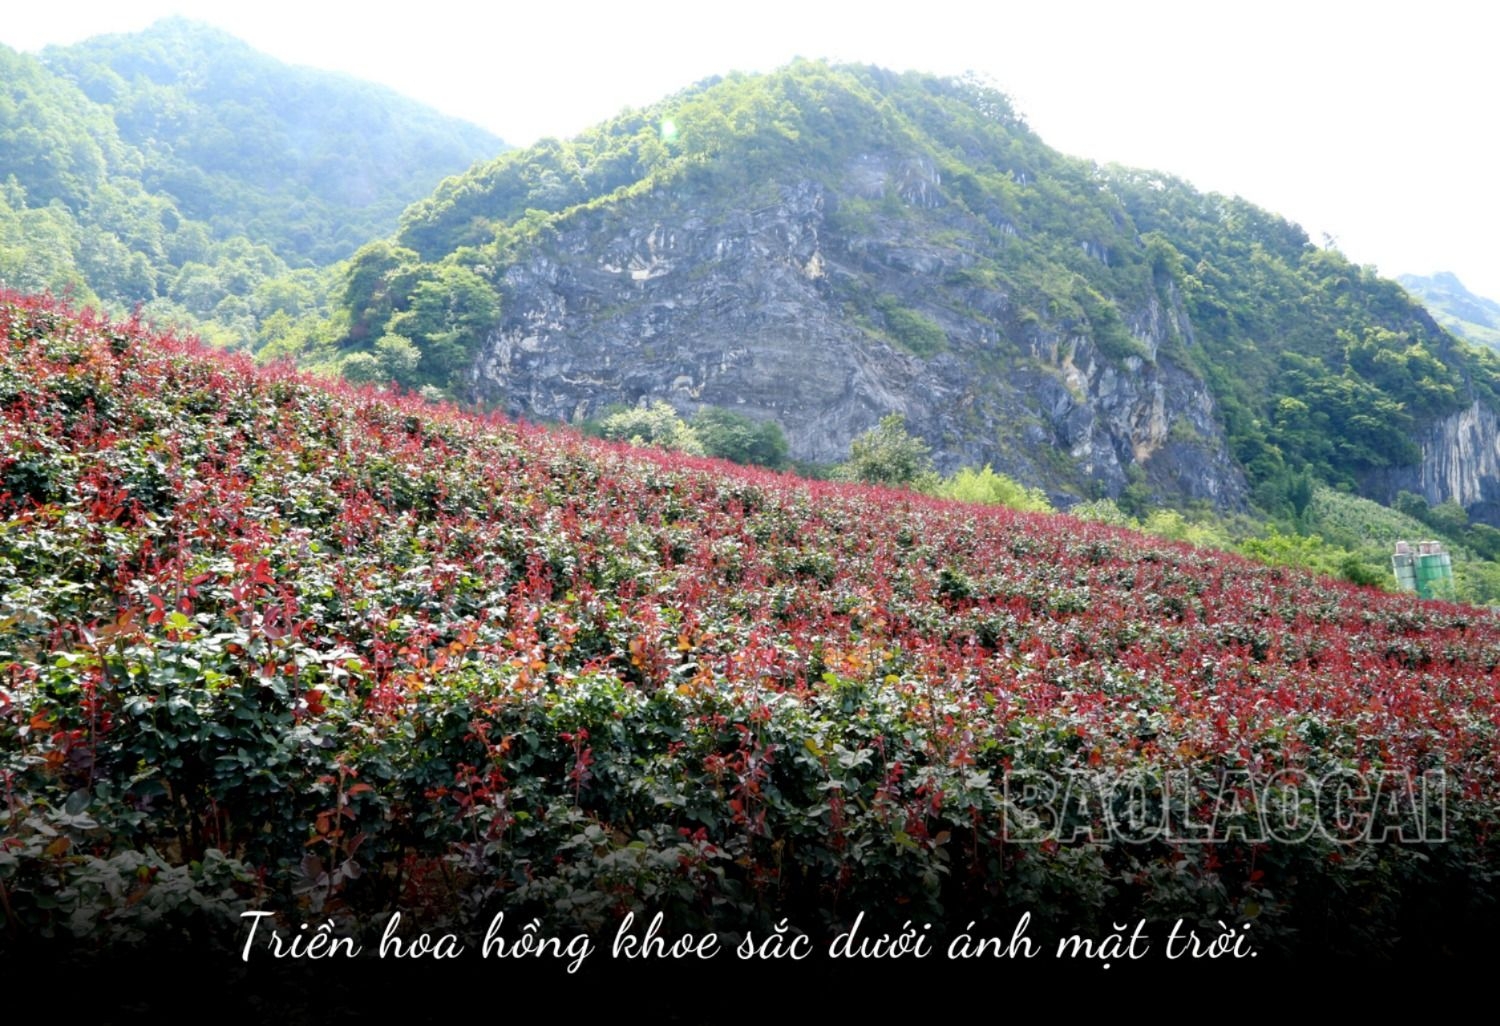 Ở một con đèo nổi tiếng Lào Cai, bất ngờ thấy bạt ngàn hoa hồng cổ, thơm khắp đồi, nông dân kiếm bộn tiền - Ảnh 3.